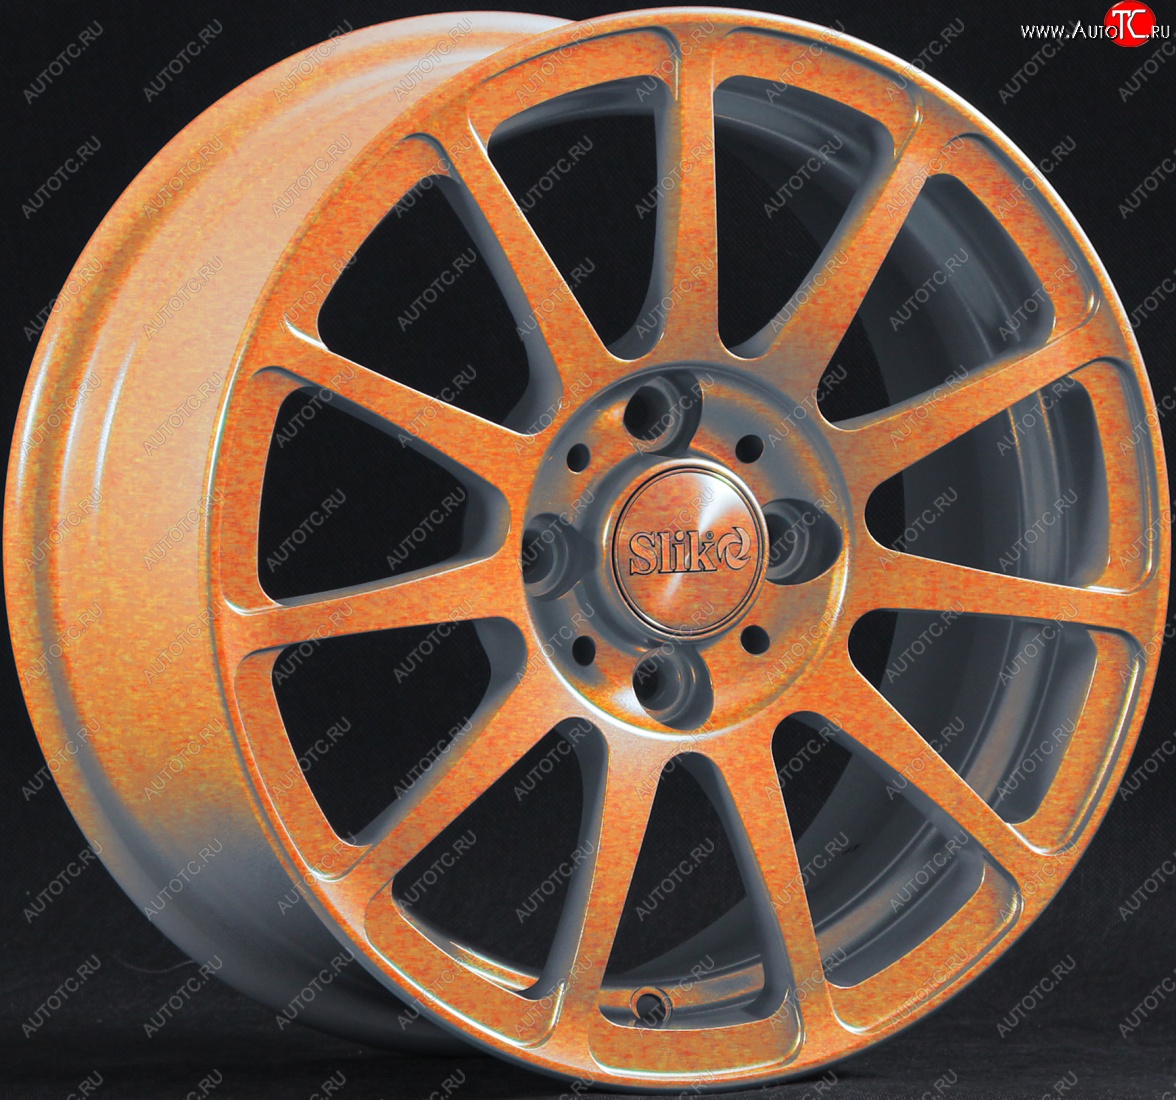 12 849 р. Кованый диск Slik Classik 5.5*14 (Cendy - медно-оранжевый глянцевый) Renault Megane LA седан рестайлинг (1999-2003) 4x100.0xDIA60.1xET36.0 (Цвет: Cendy - медно-оранжевый глянцевый)